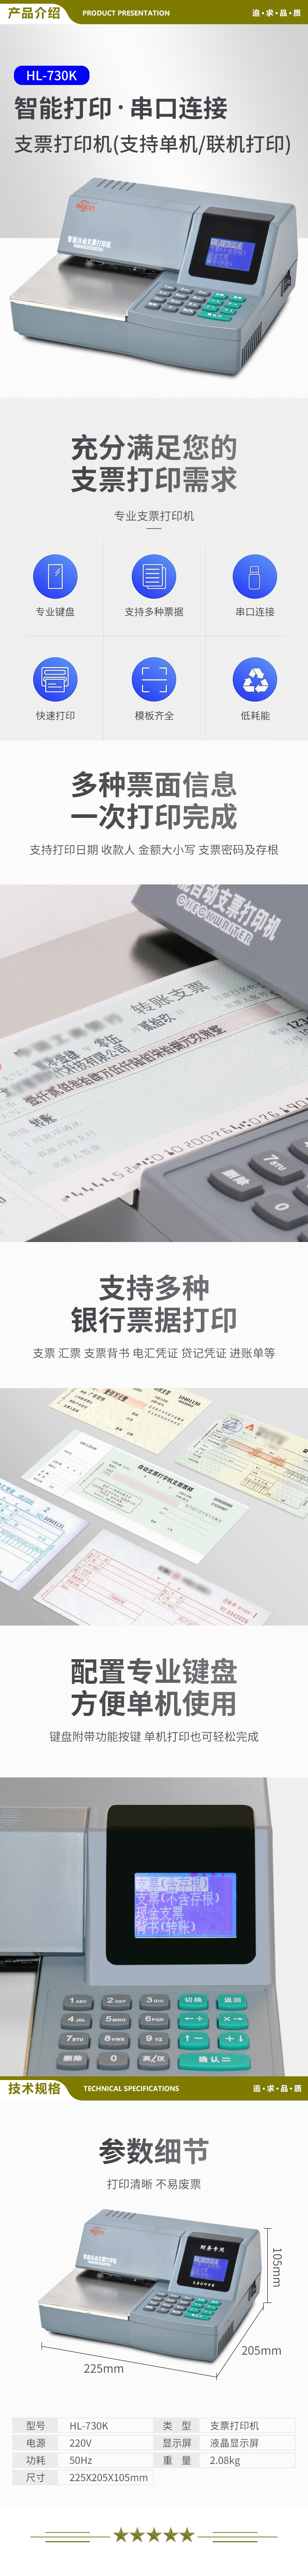 惠朗 huilang 730K 多功能自动支票打字机 票据打印机 2.jpg